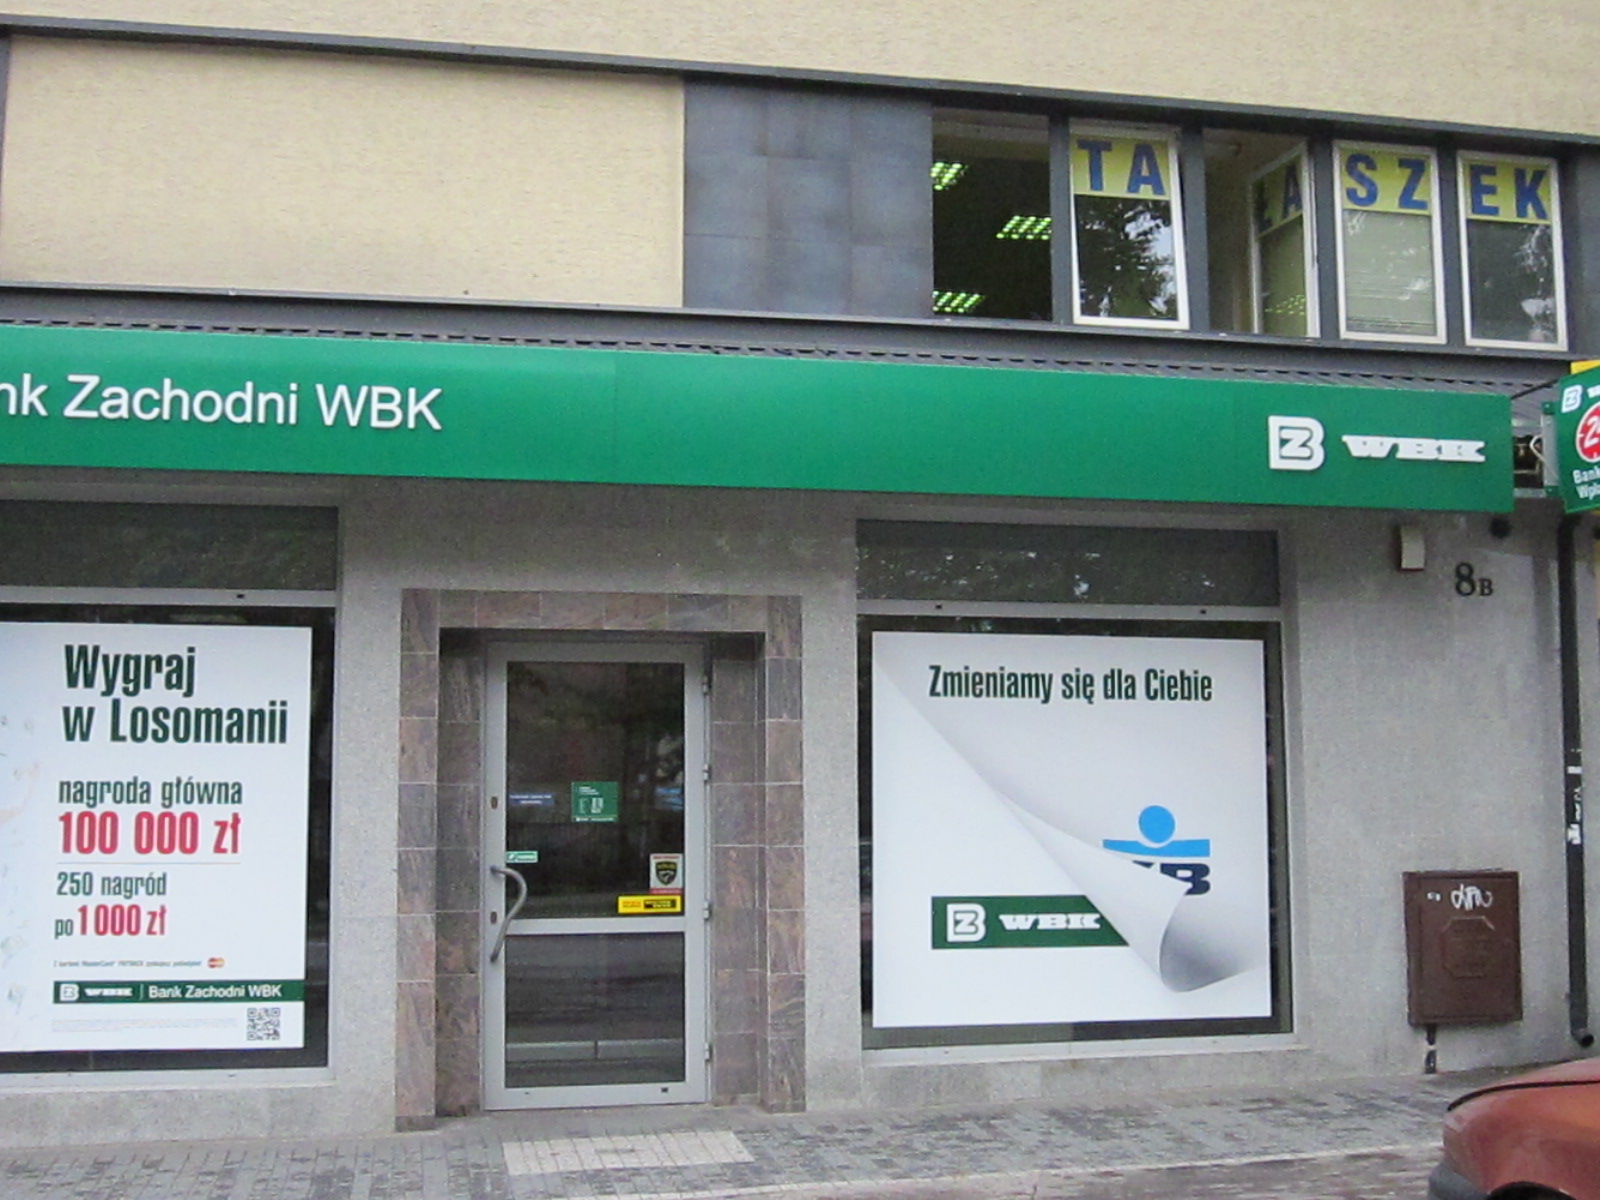 Вбк банк заходни в польше (bank zachodni wbk): открытие и проверка счета, вход в систему bzwbk24, swift-переводы в польском банке и другое